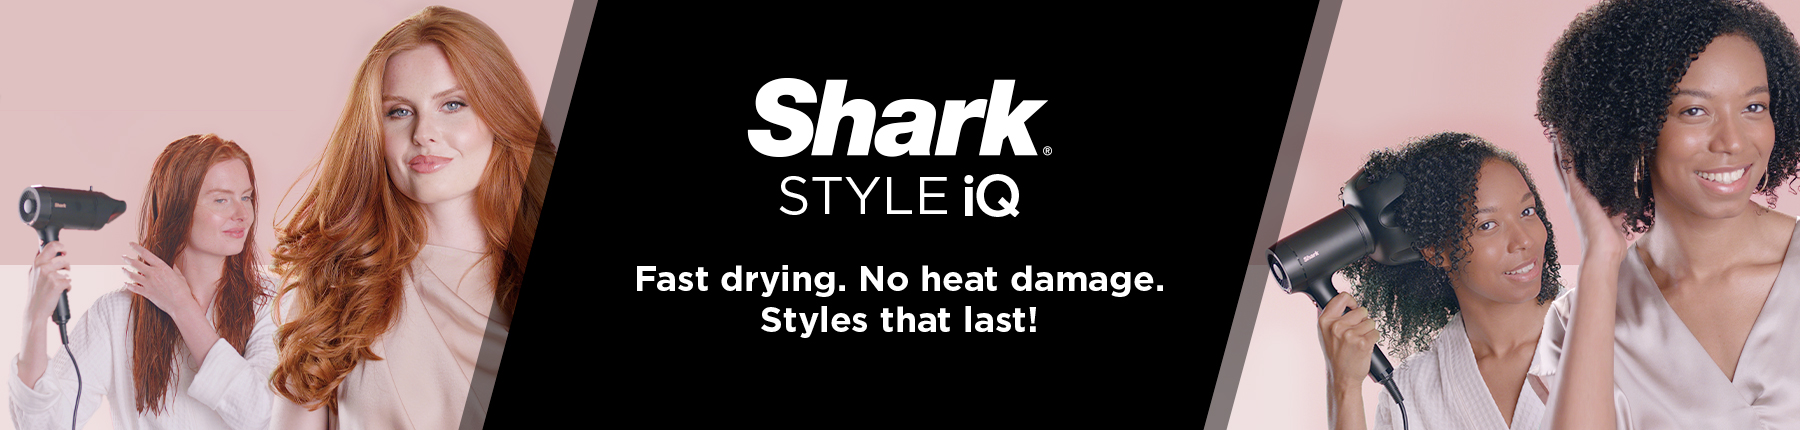 Shark Style iQ Hair Dryer Banner